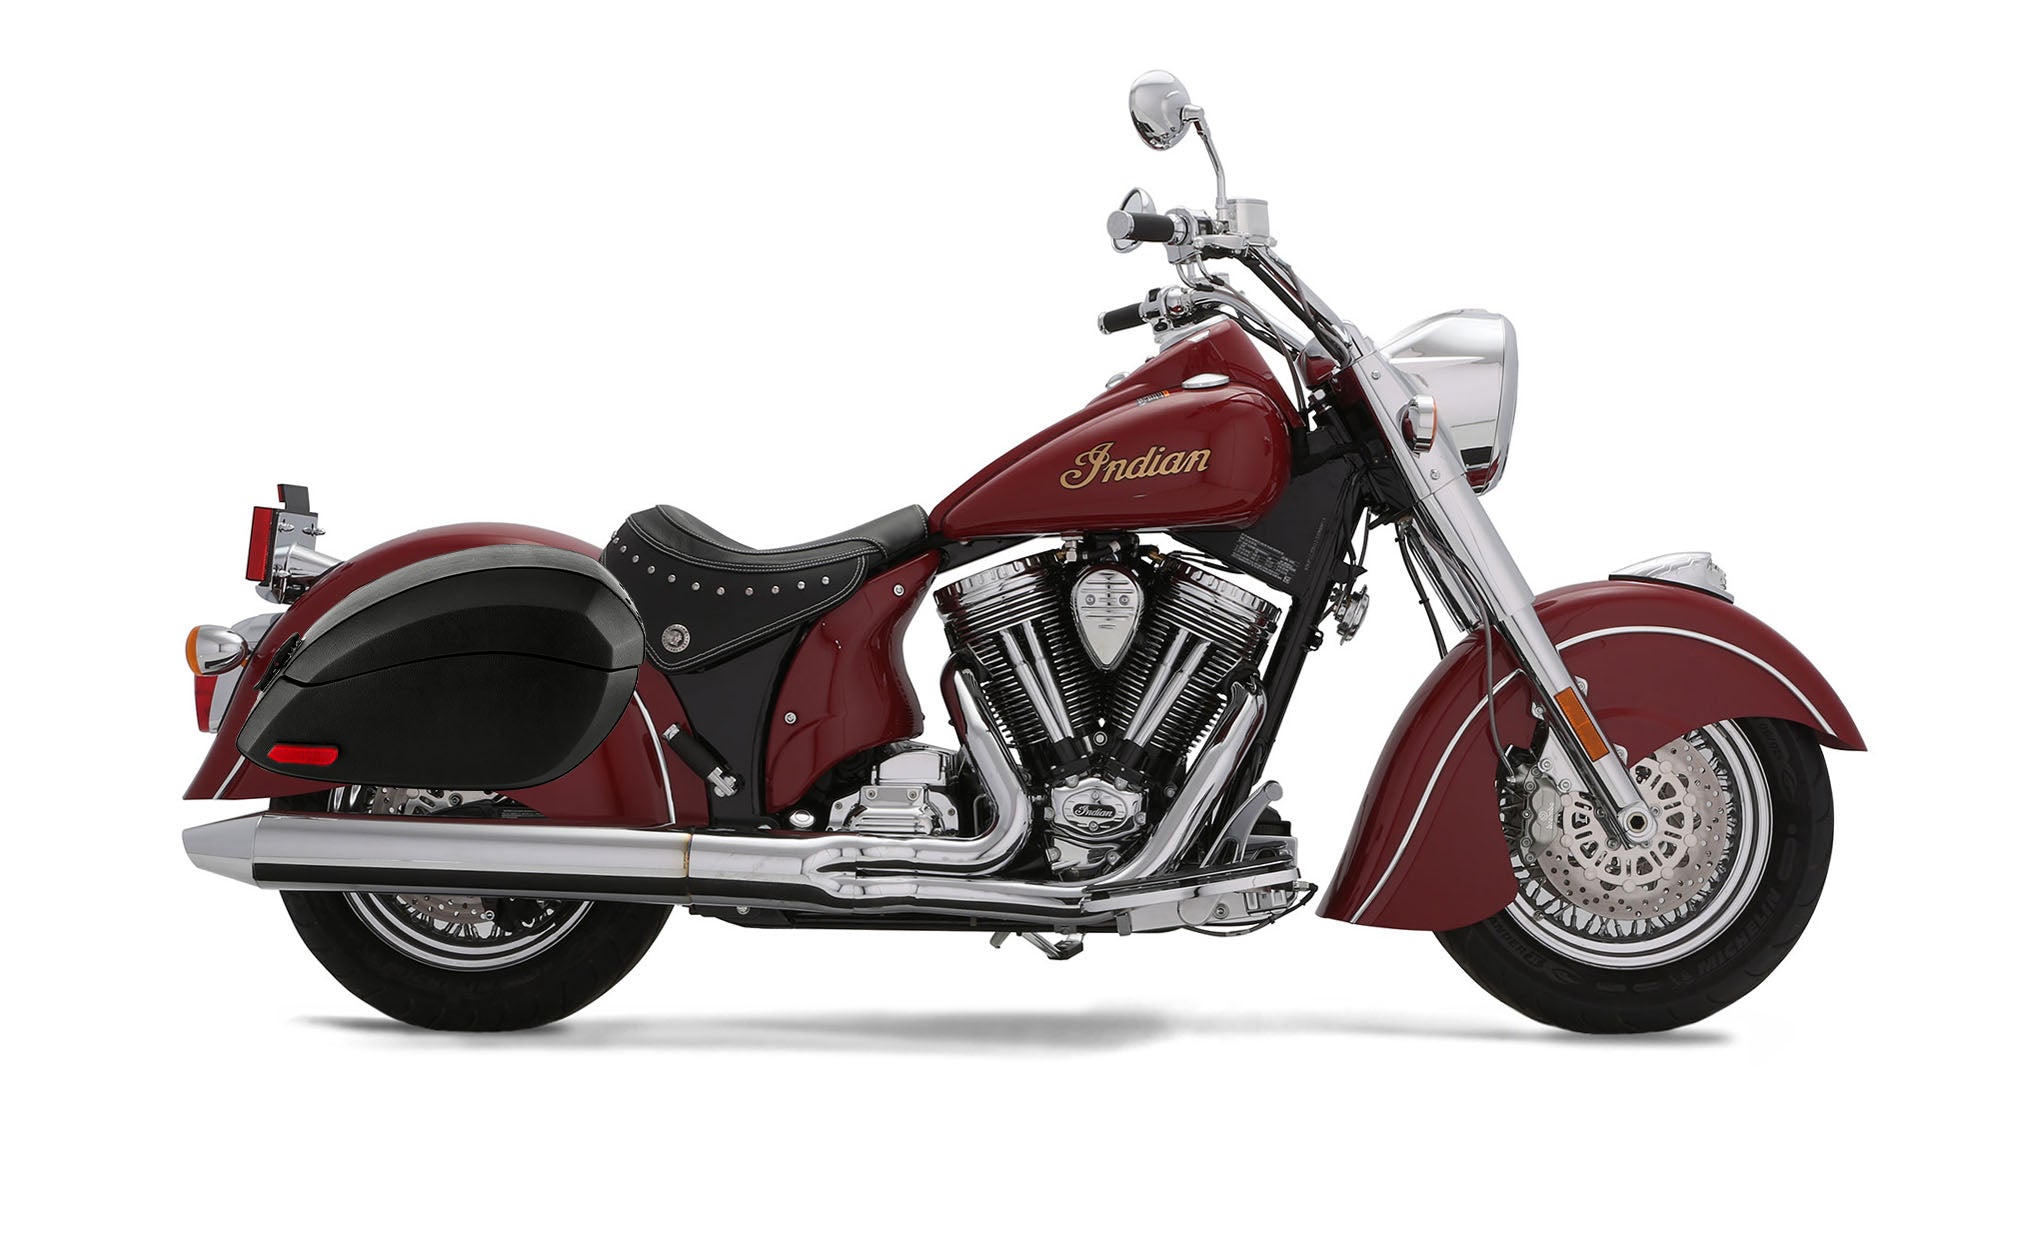 Viking Phantom Large Indian Chief Deluxe Leather Wrapped Motorcycle Hard Saddlebags on Bike Photo @expand